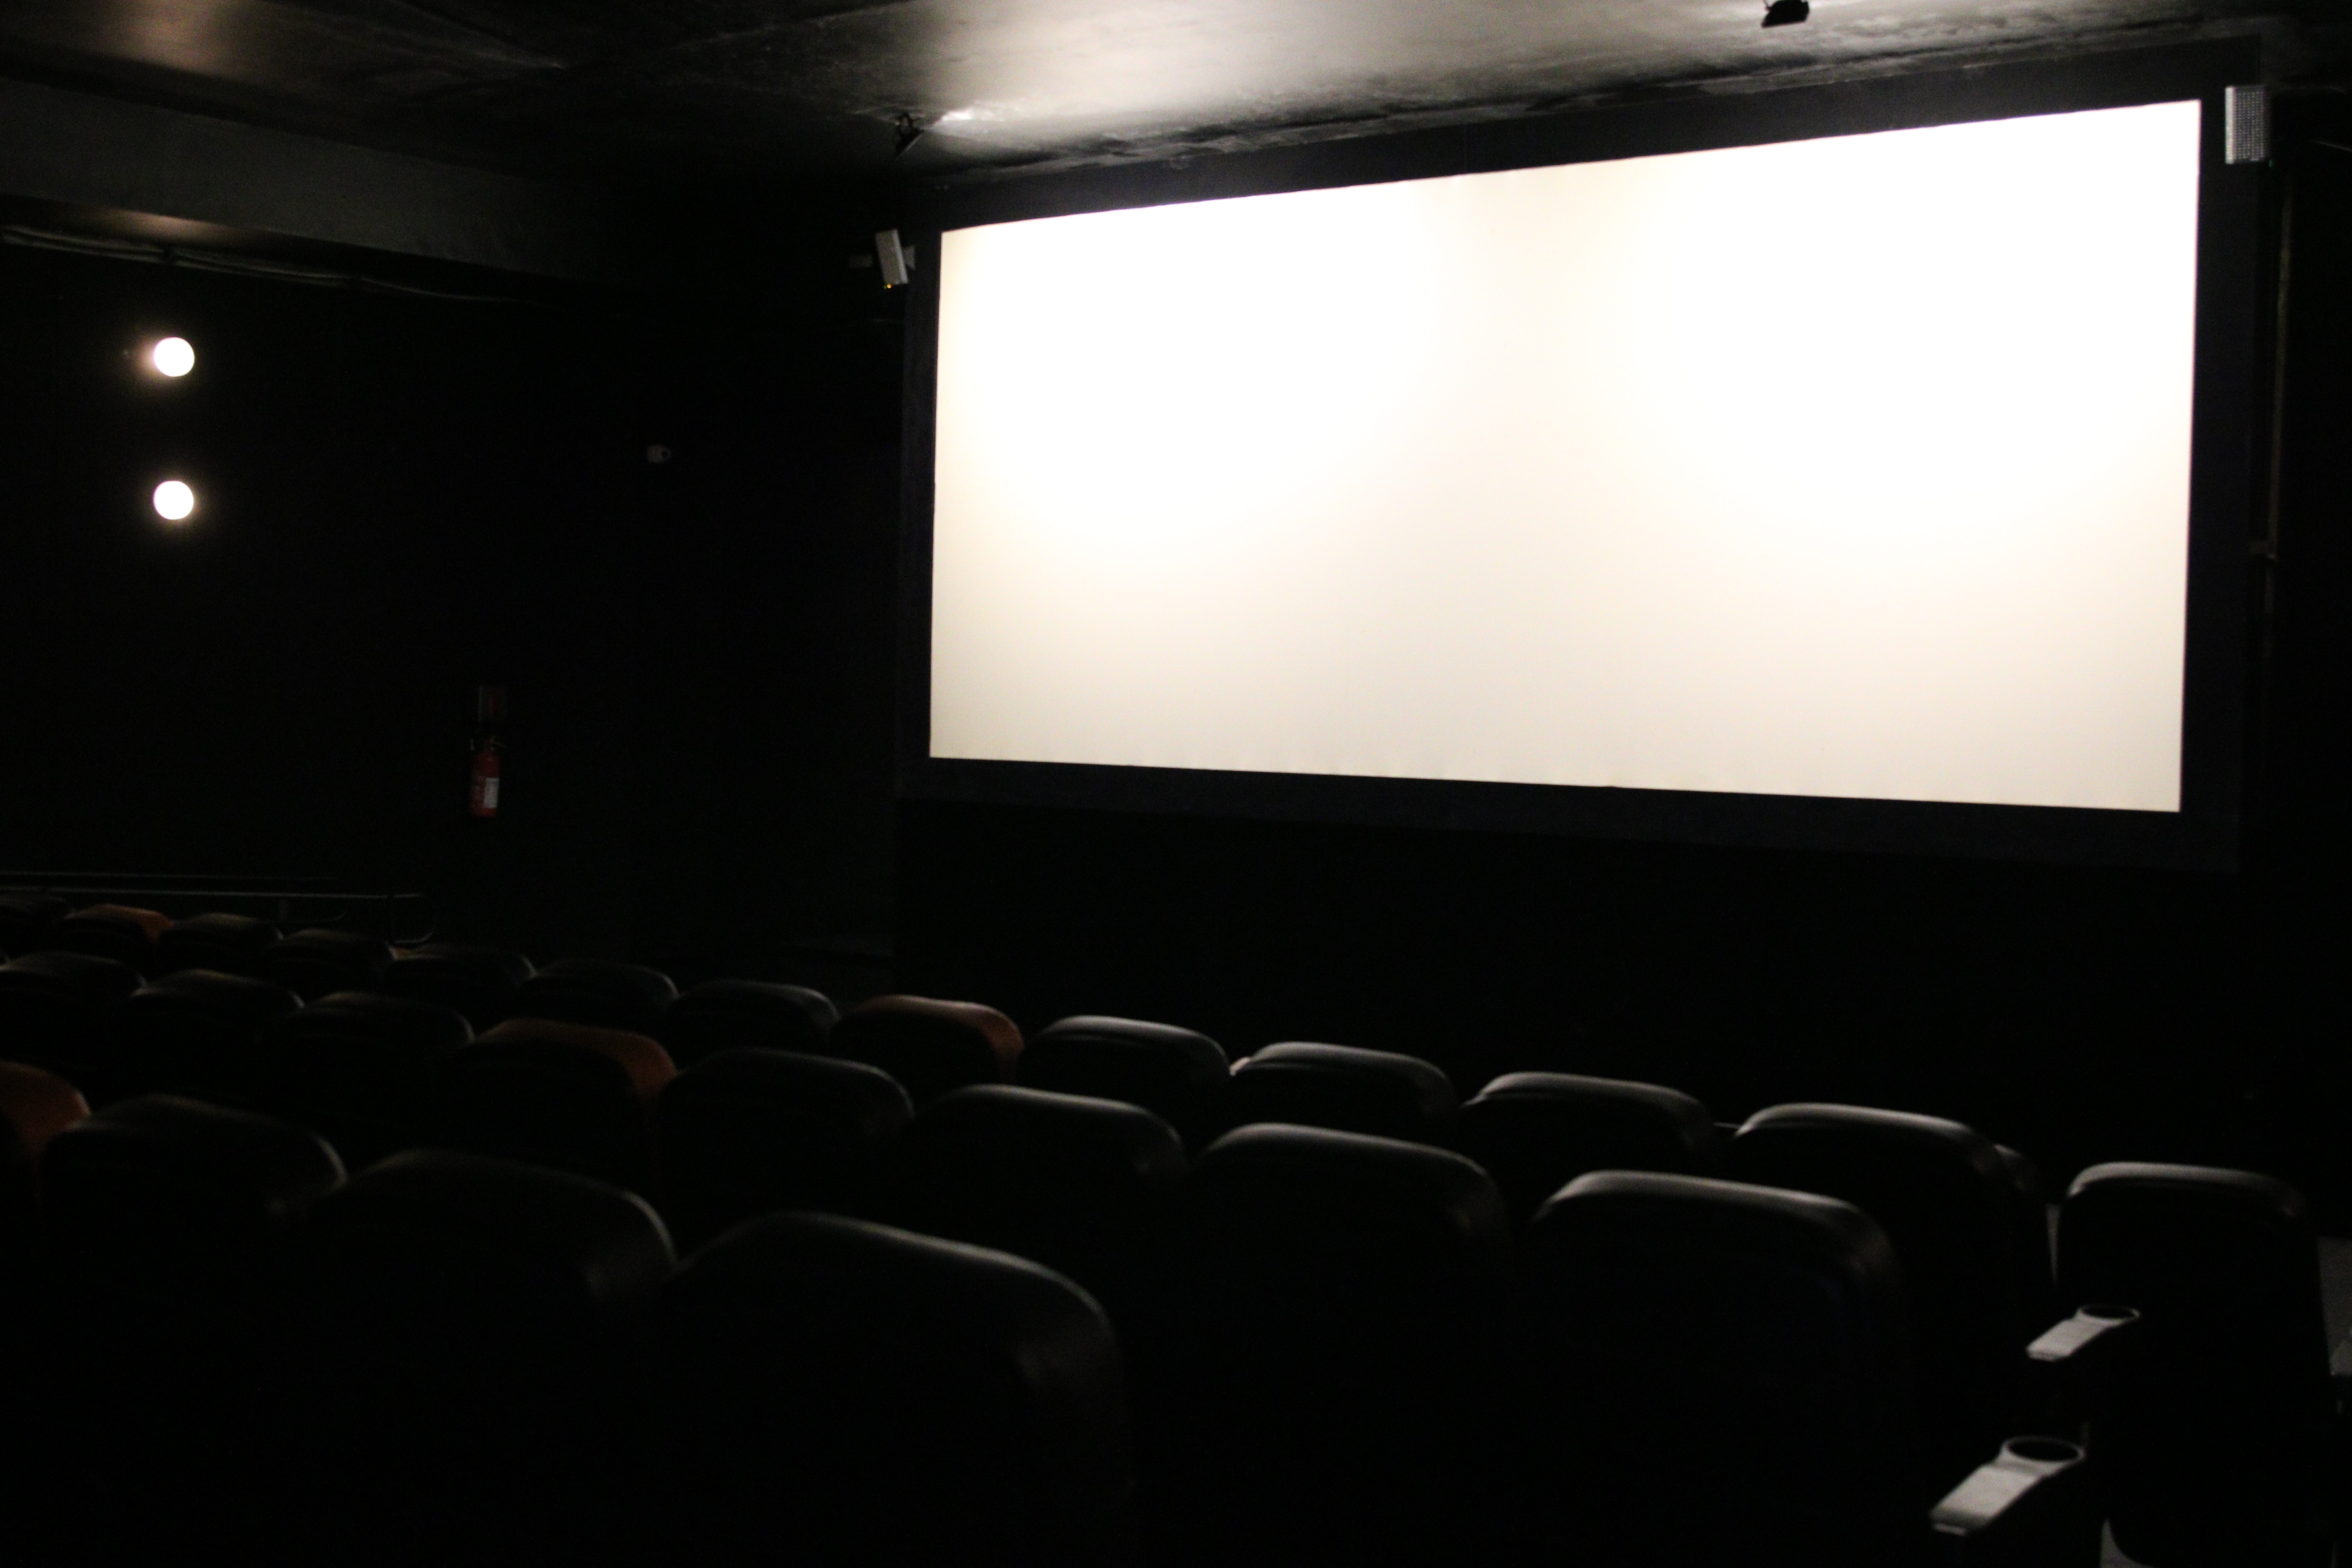 A lei obriga a exibição de filmes brasileiros em salas de cinema até 2033.